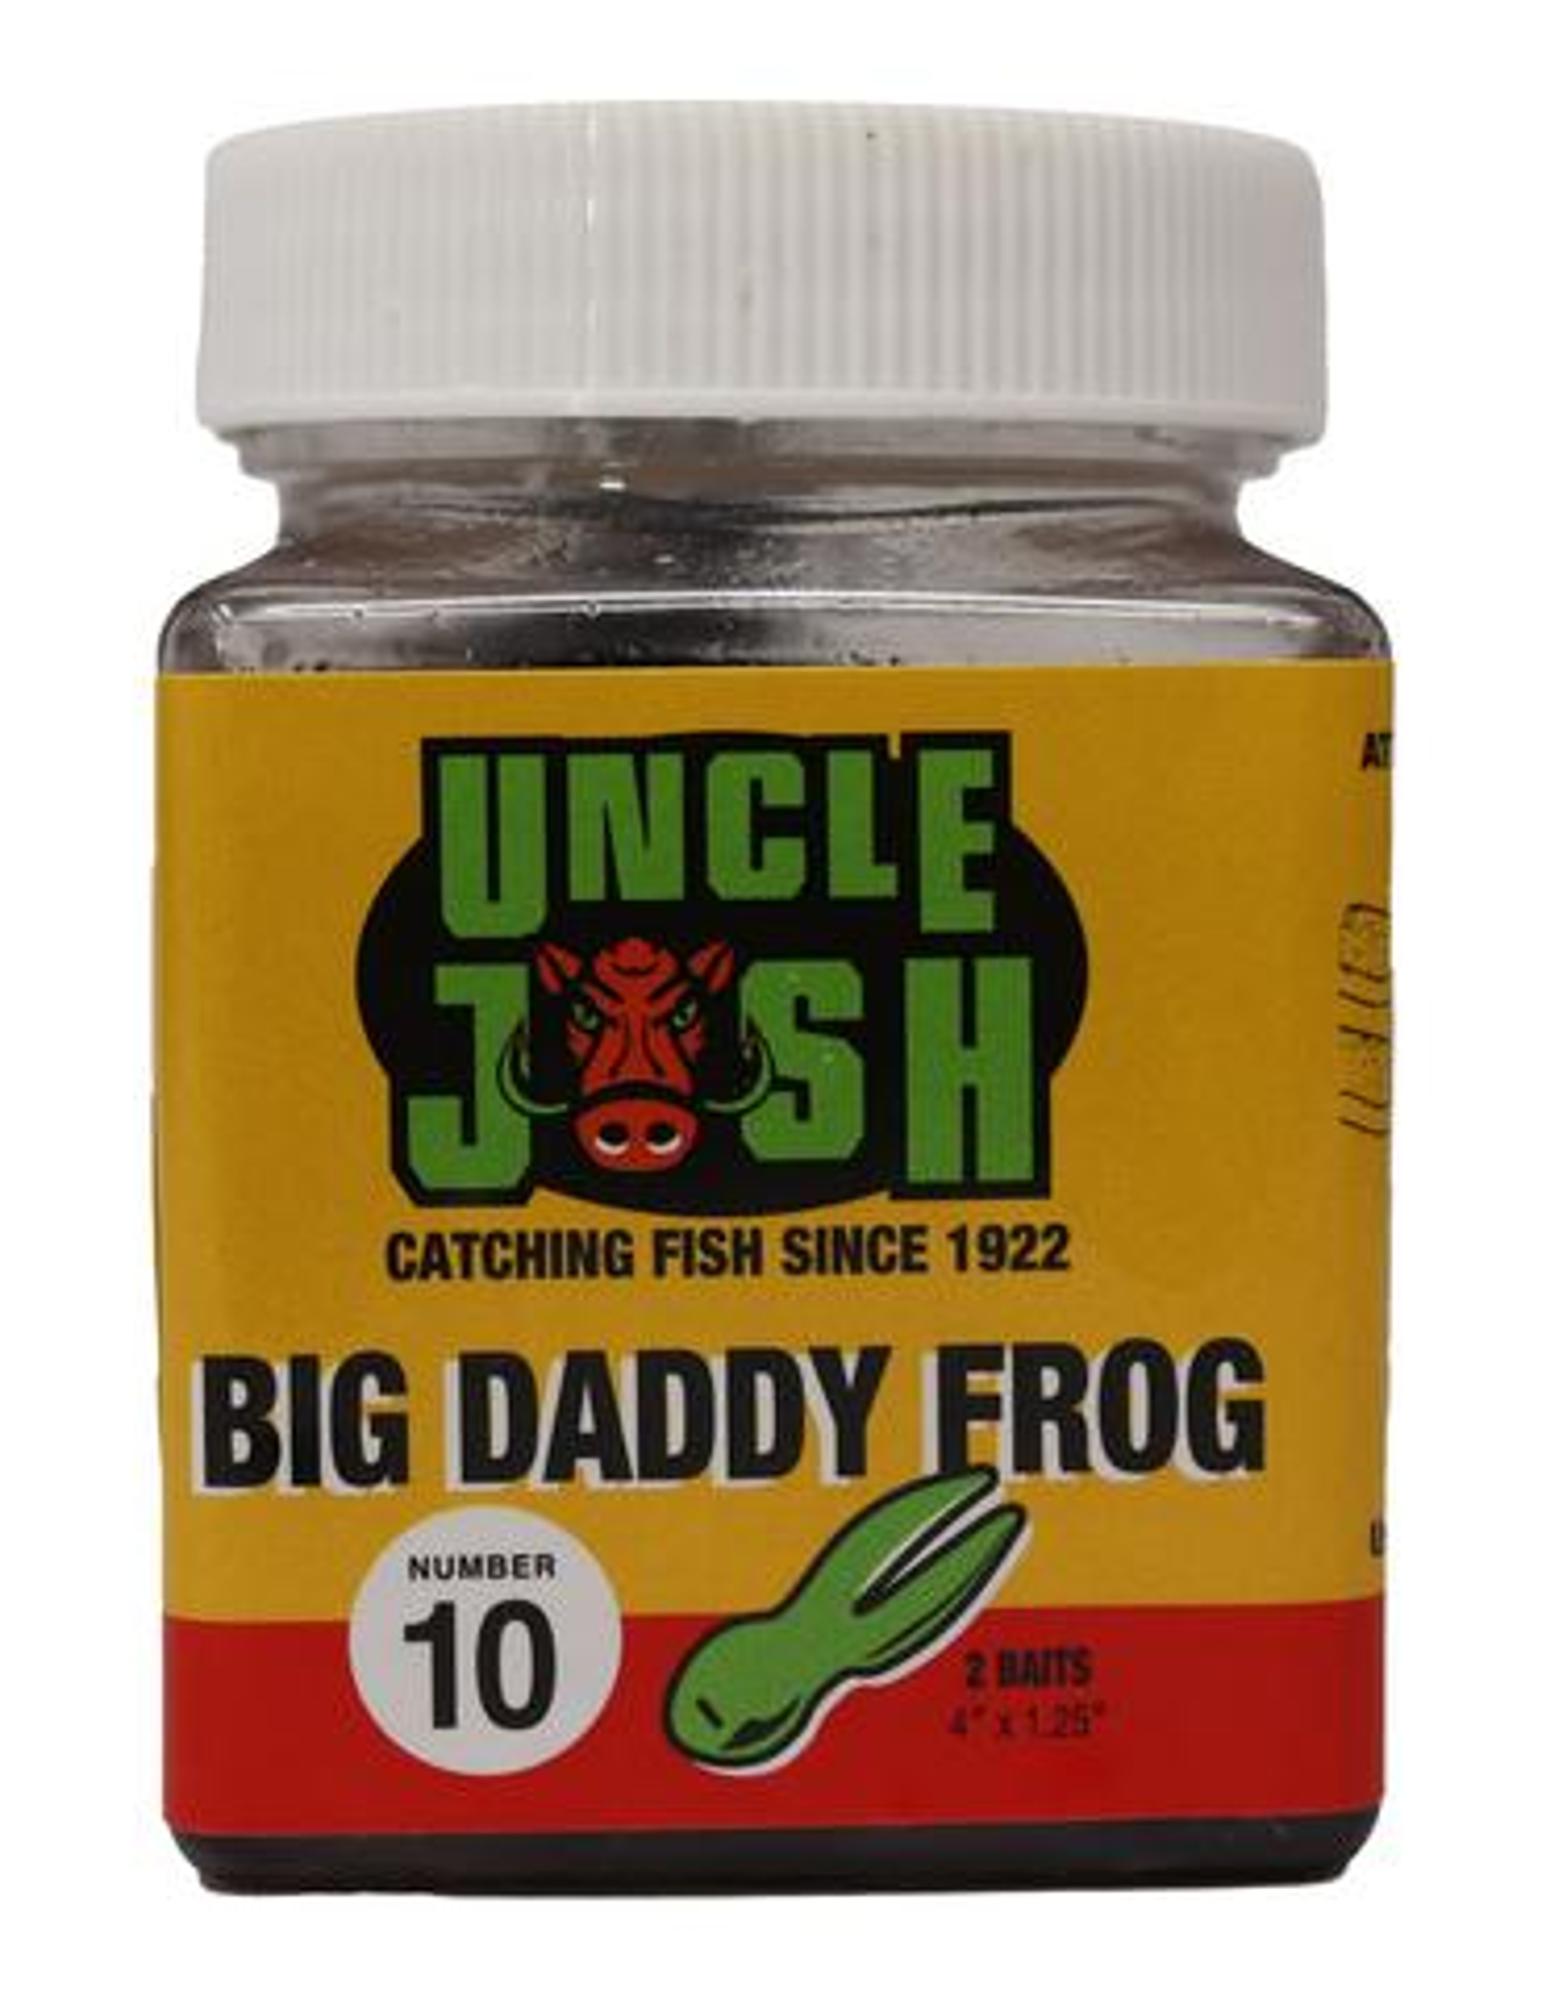 # 10 Big Daddy Pork Frog